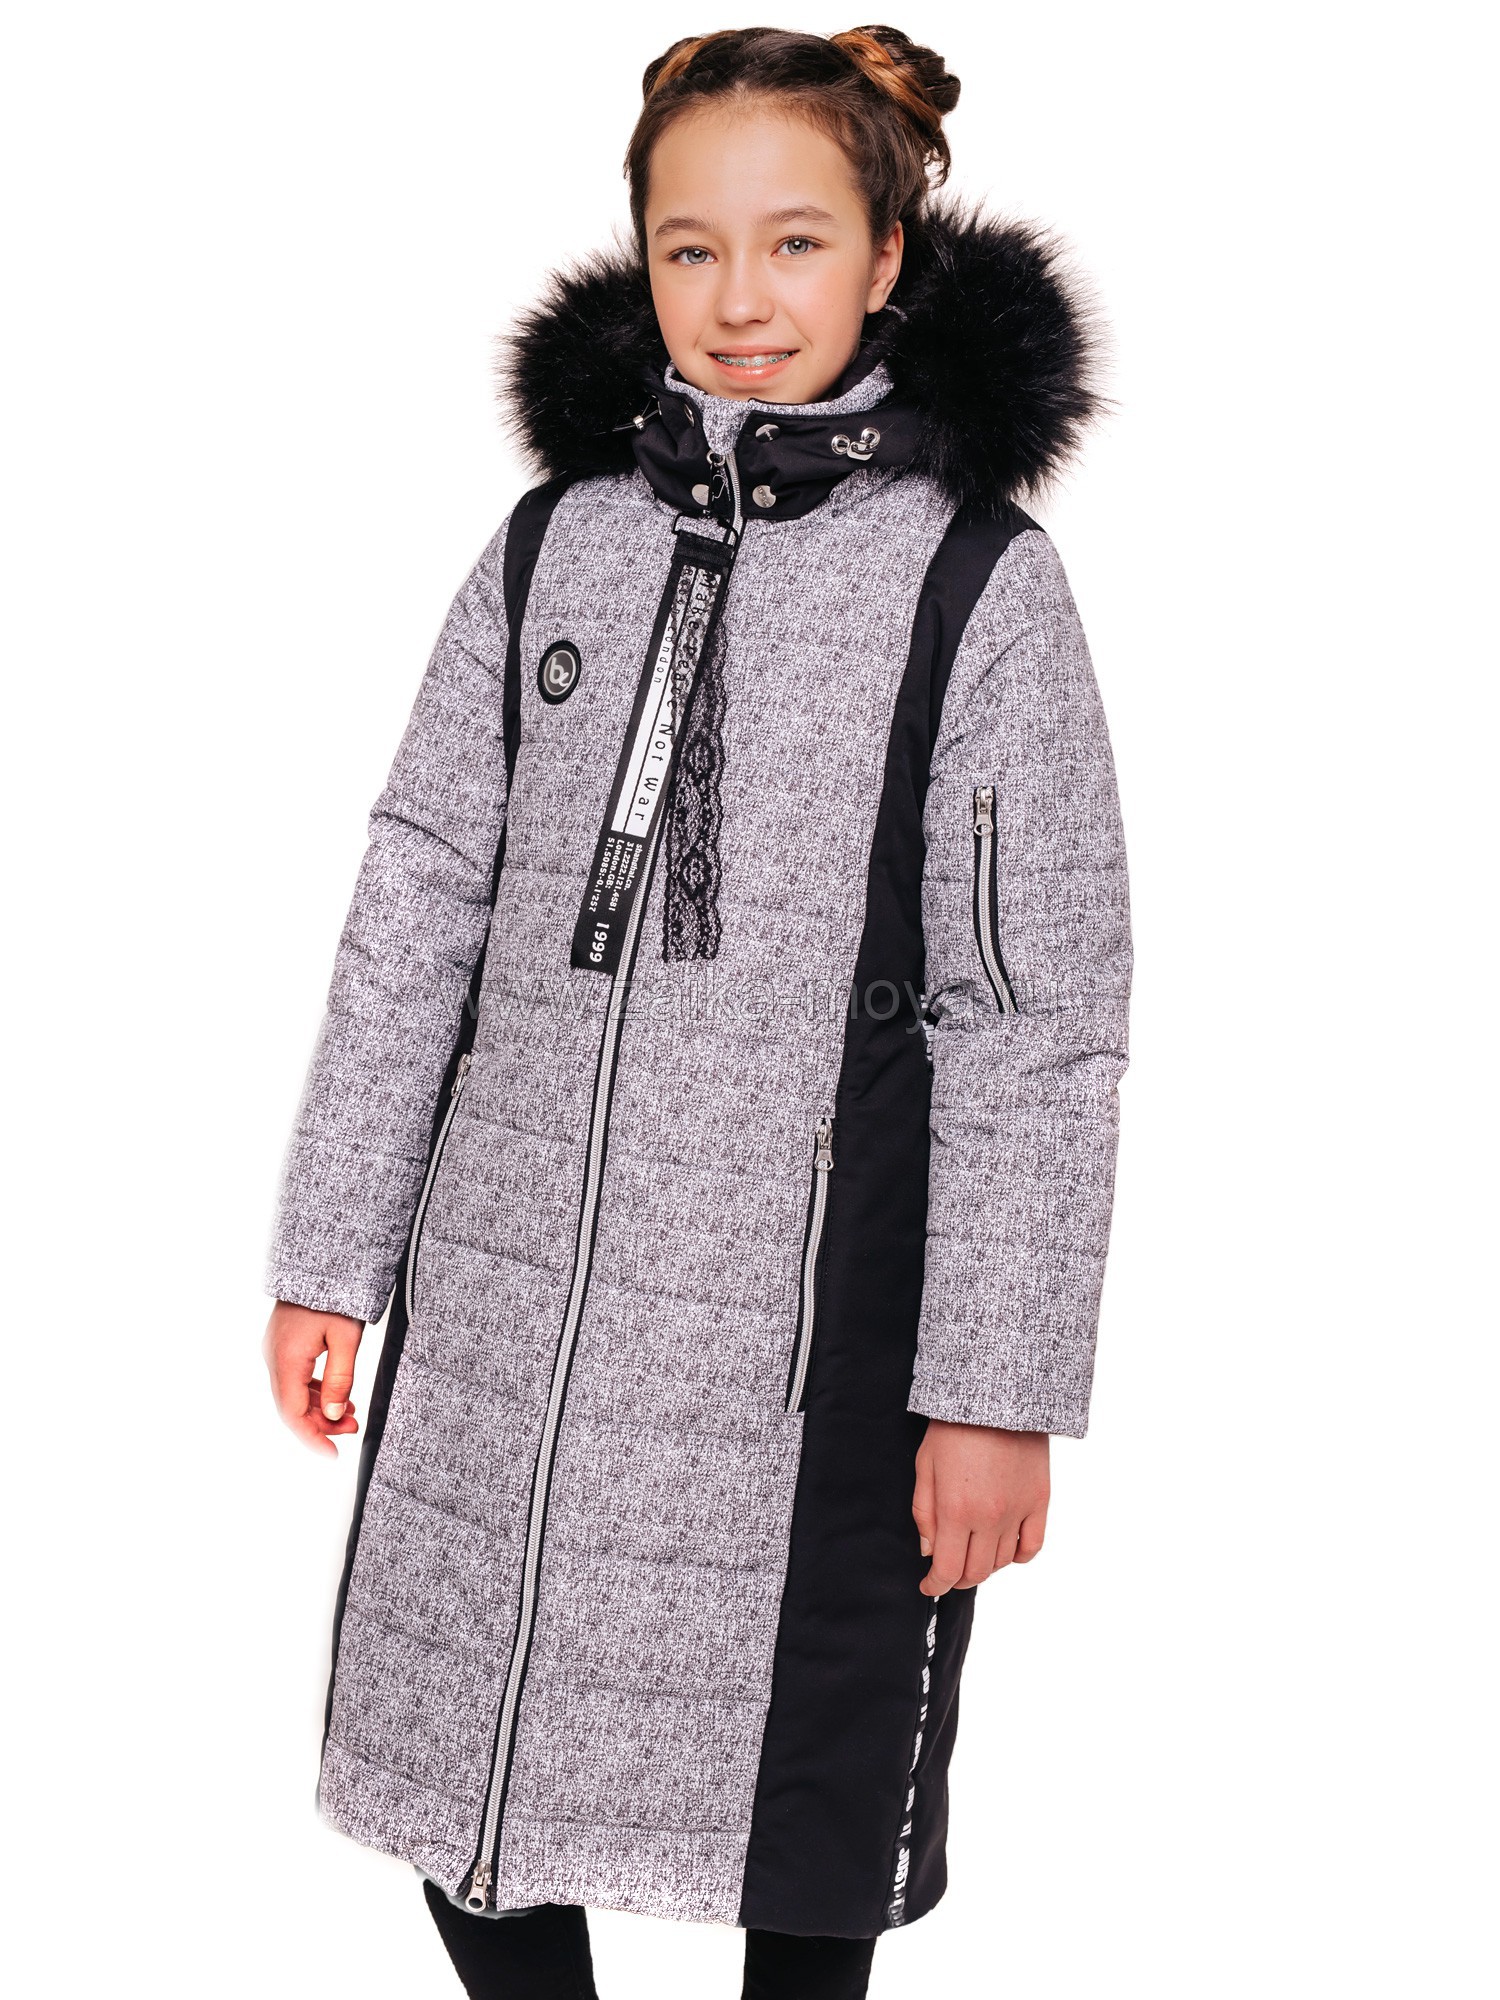 Зимние куртки, парки и пальто для девочек